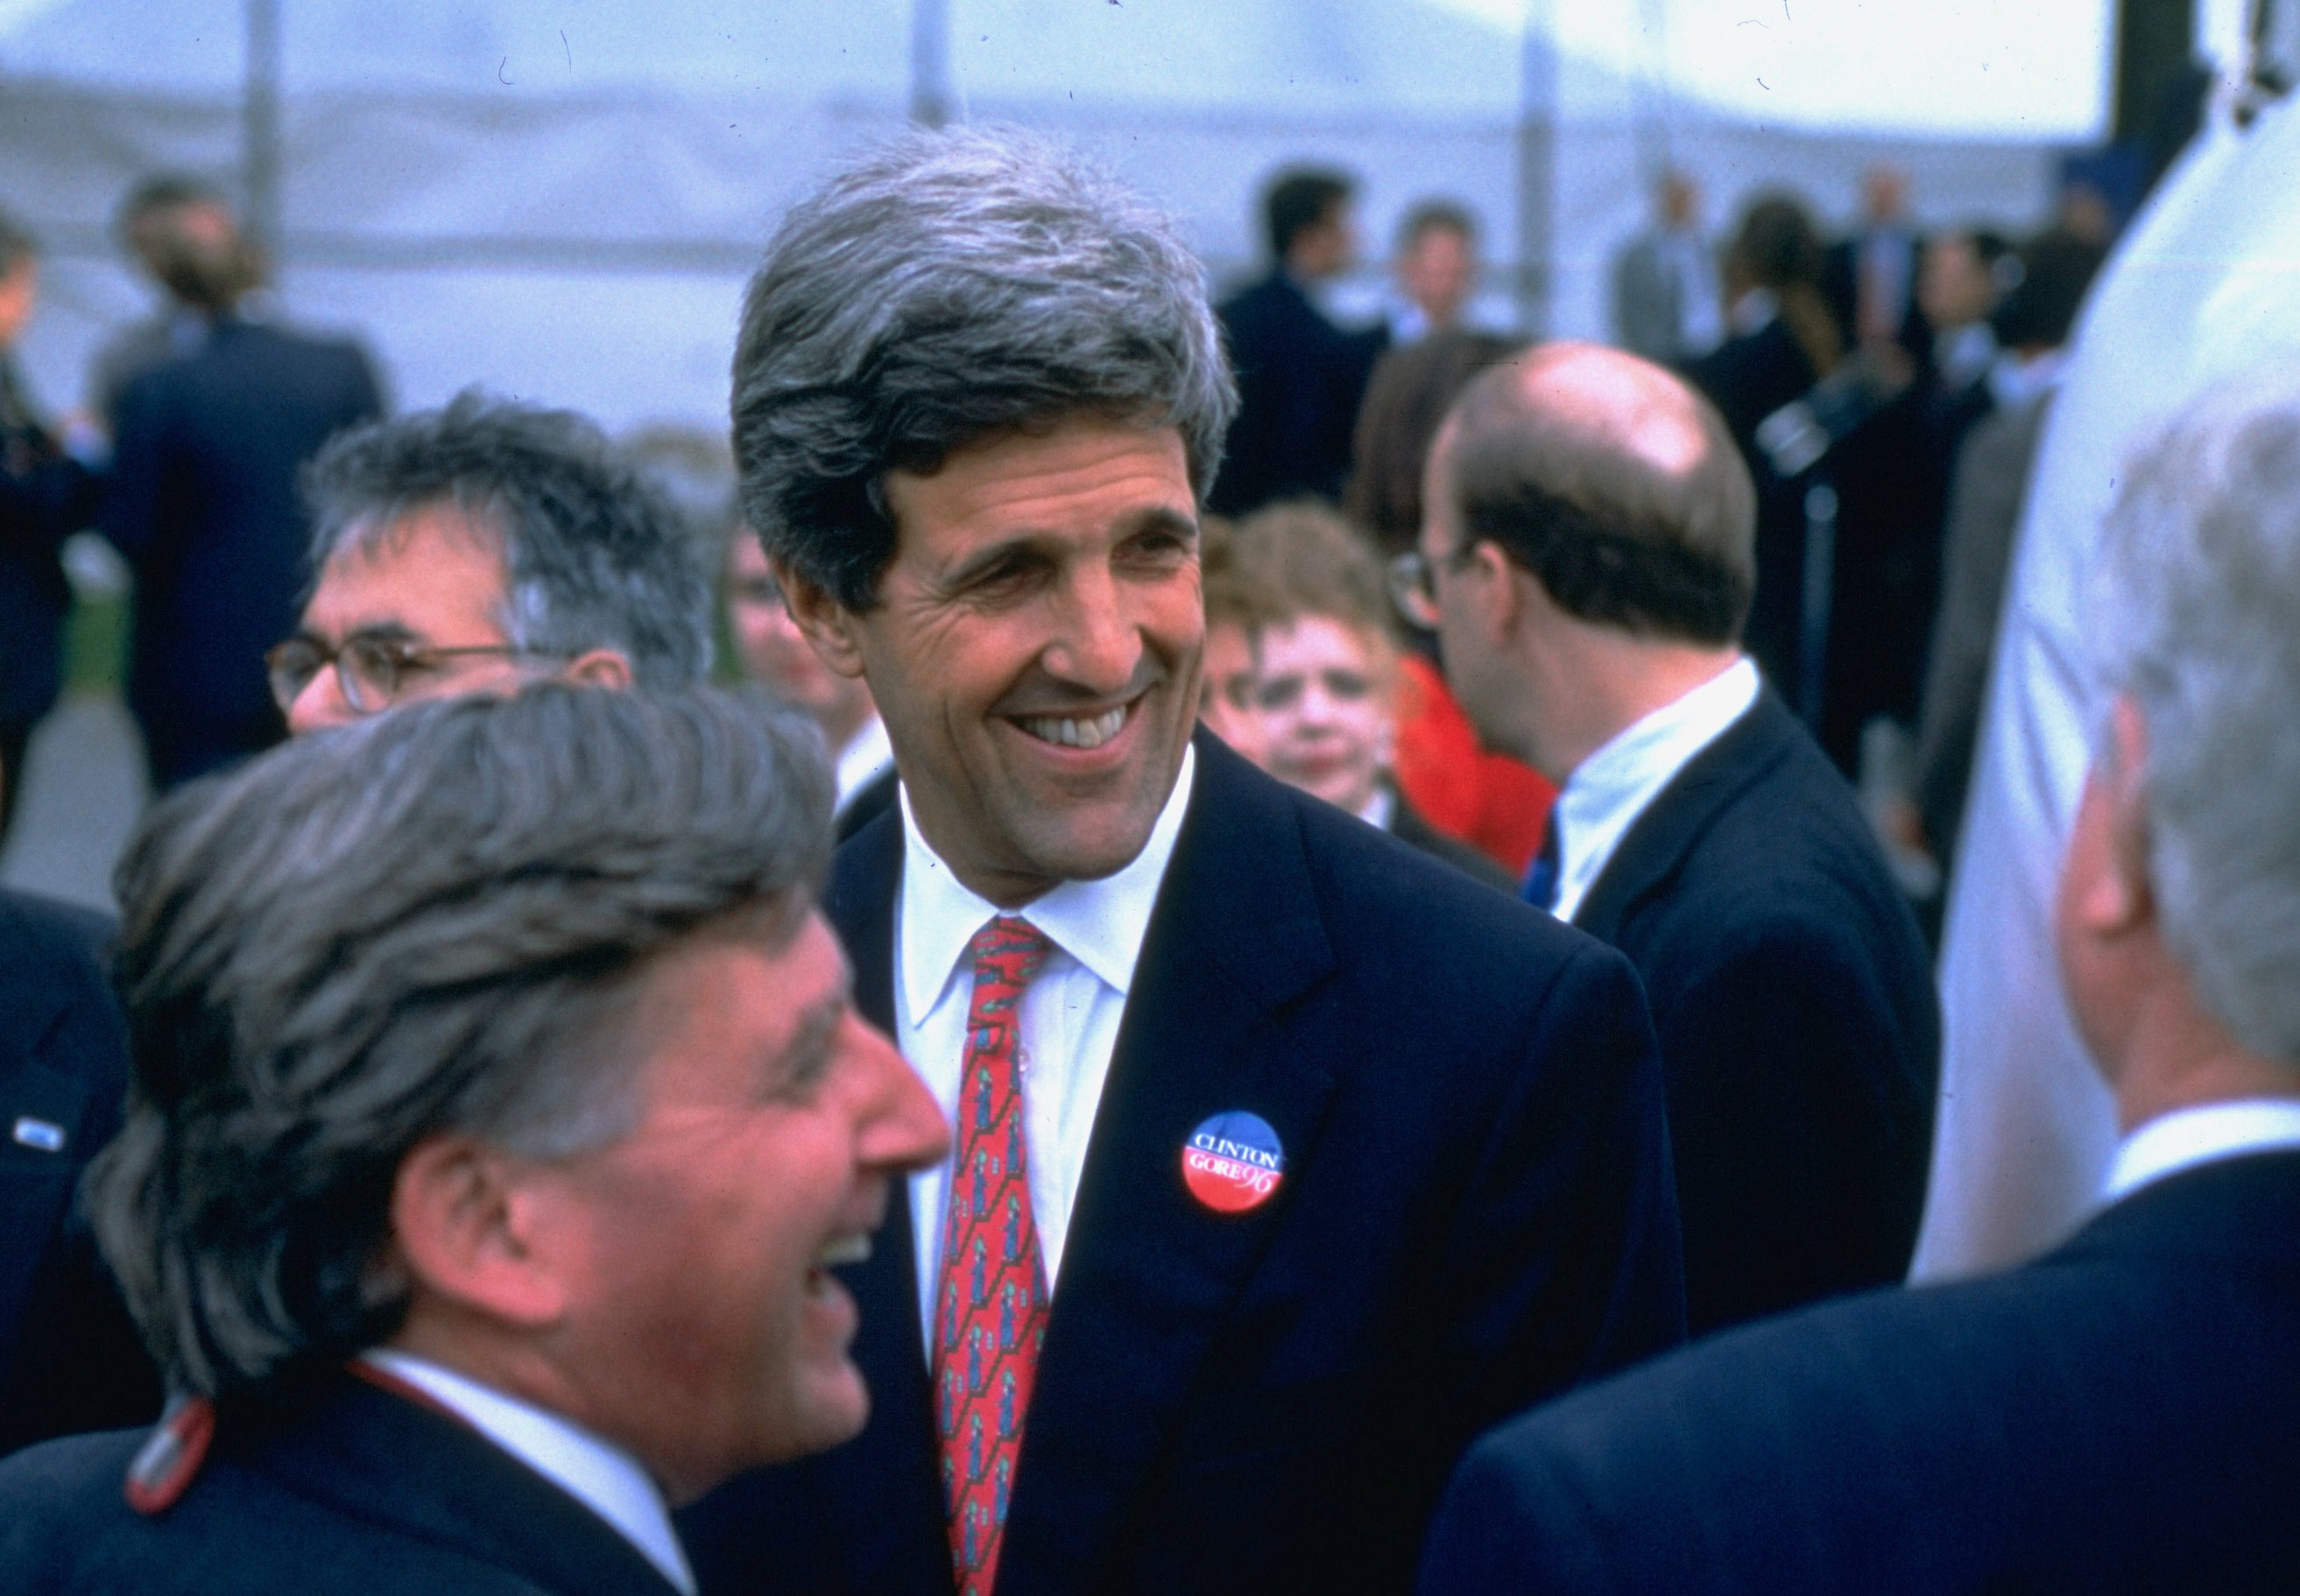 John Kerry laughing